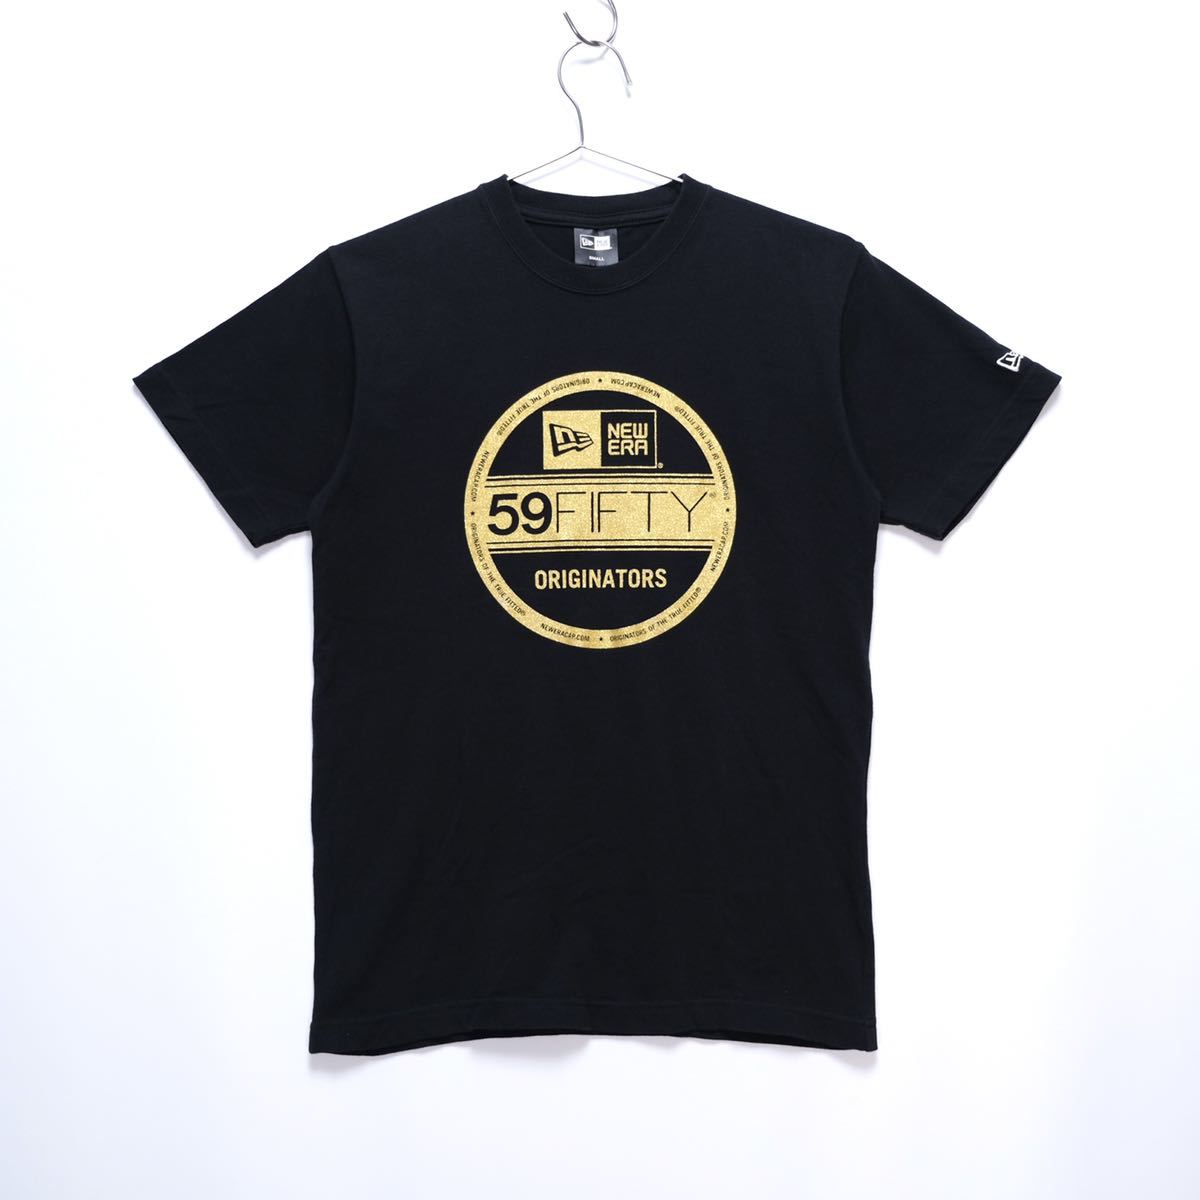 【送料無料】NEW ERA(ニューエラ)/バイザーステッカーロゴ Tシャツ/半袖/ブラック×ゴールド/Sサイズの画像1